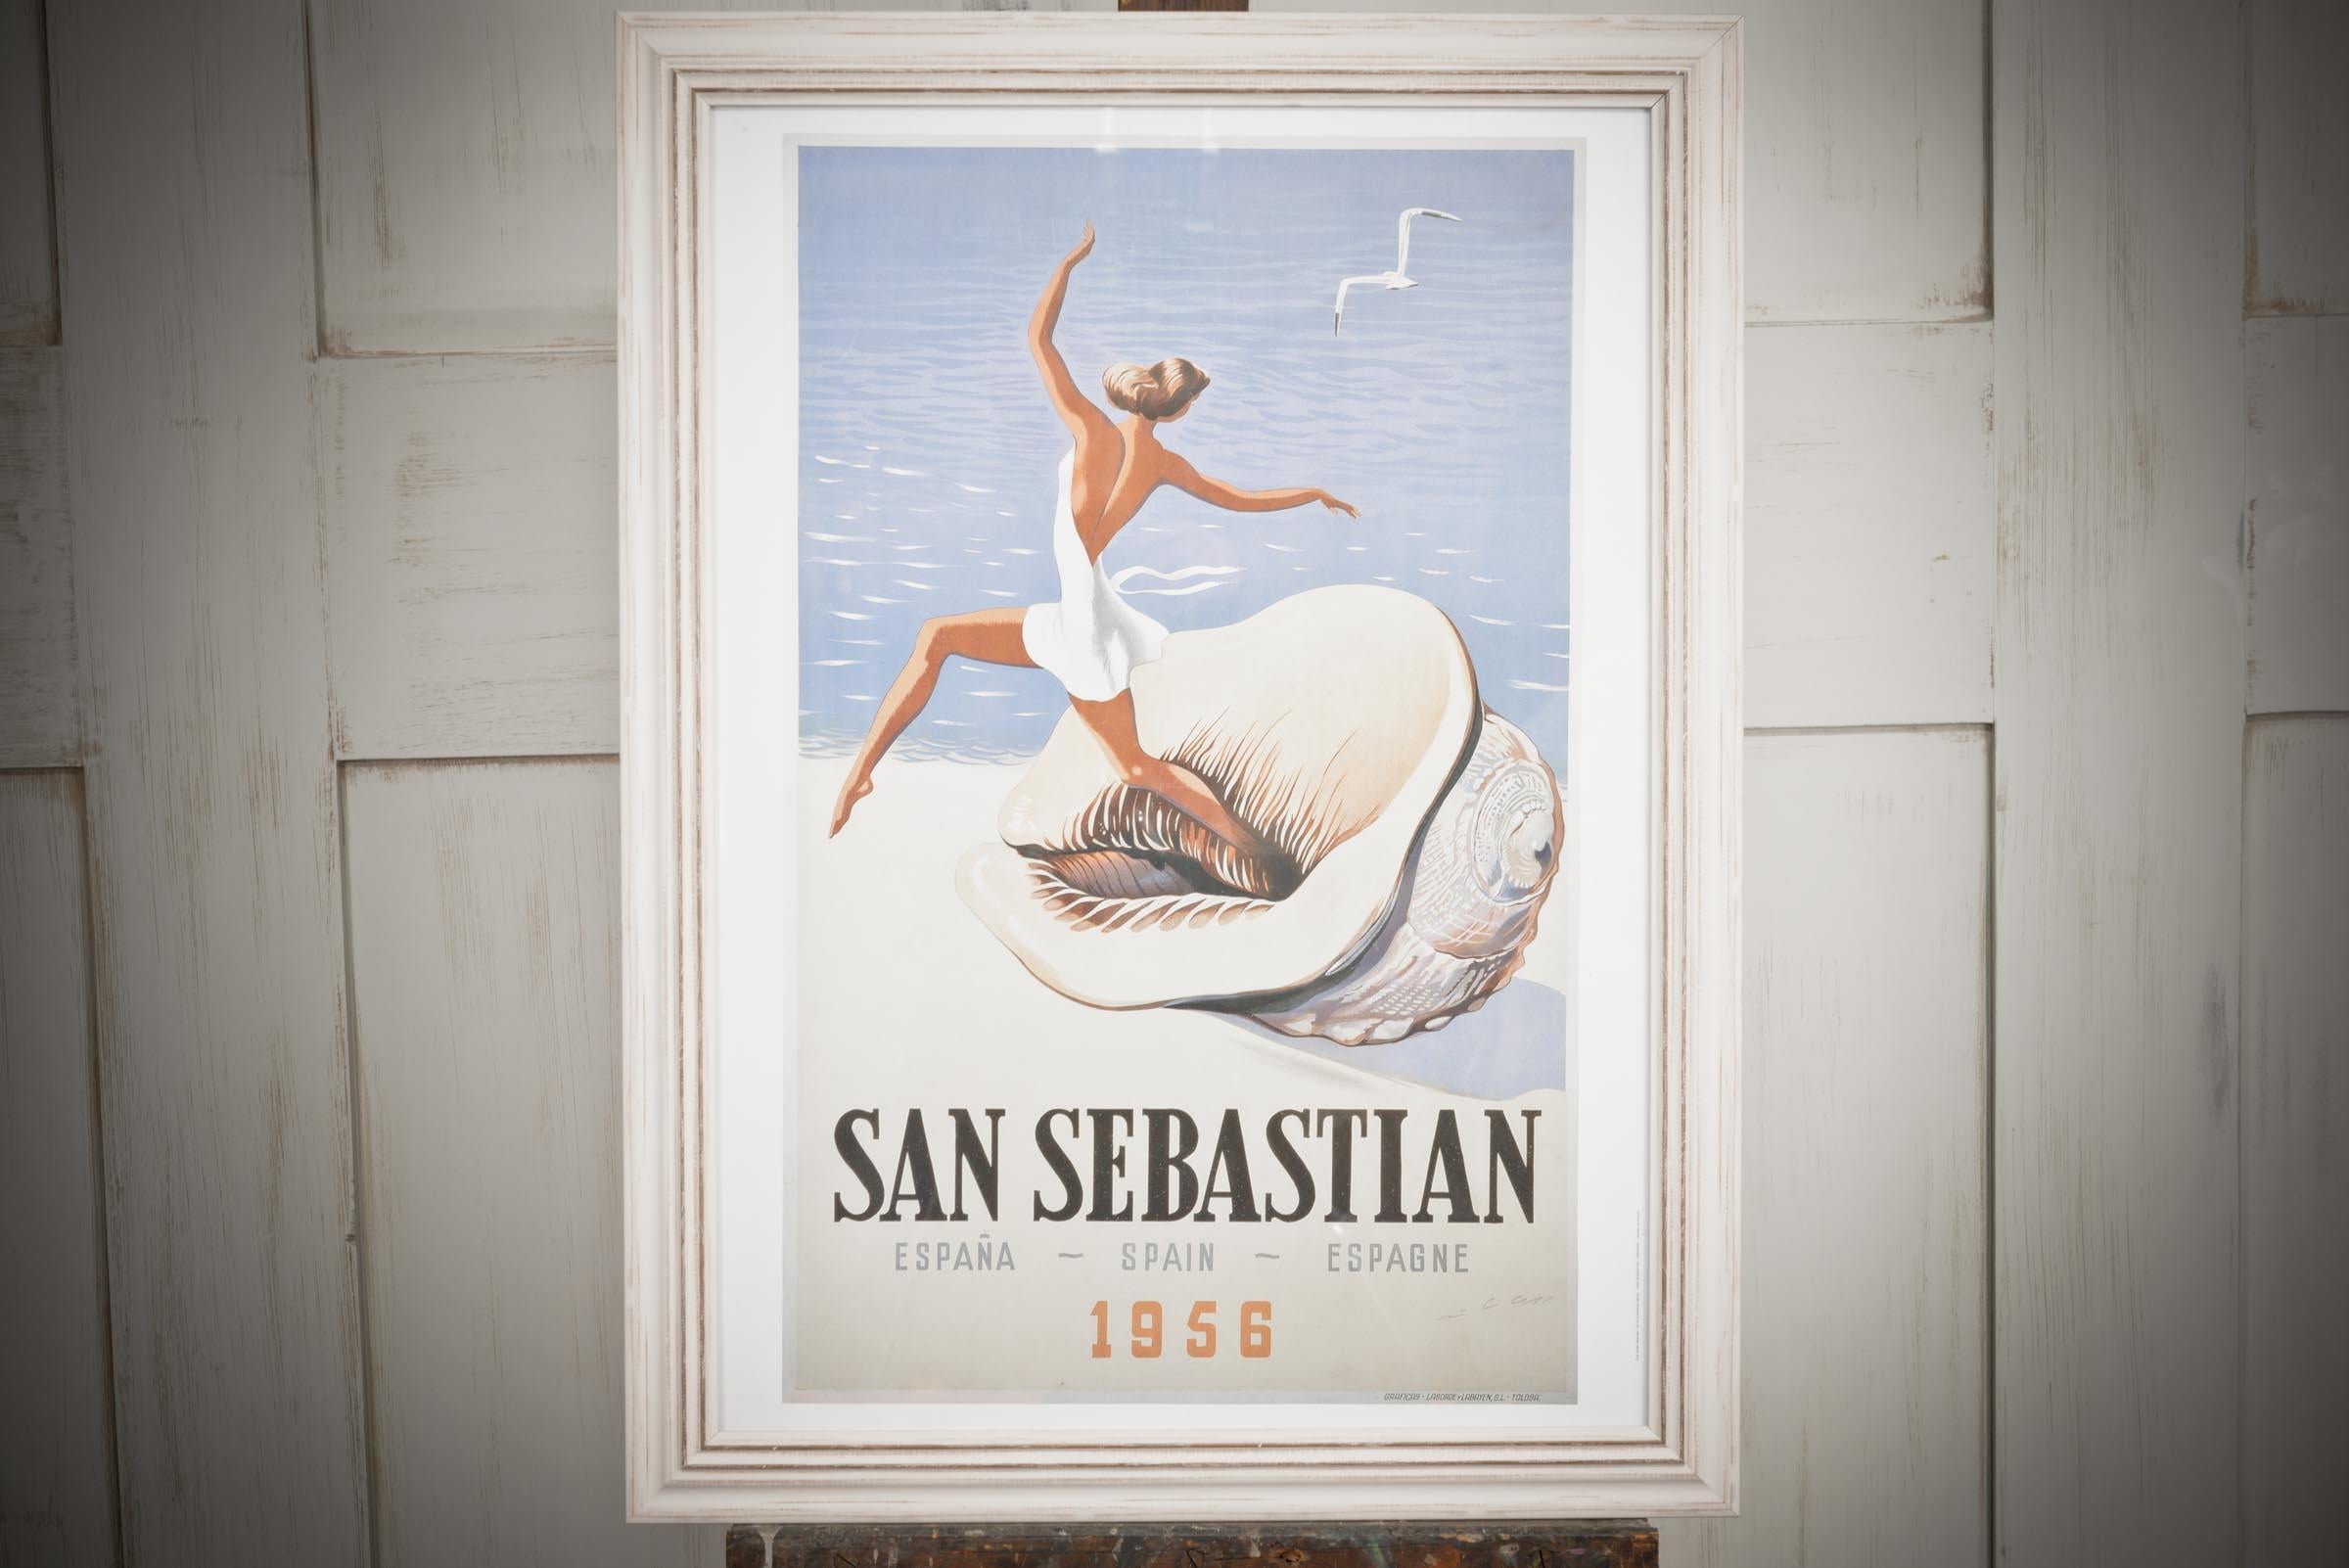 Wunderschönes gerahmtes Plakat aus San Sebastian, Spanien, aus dem Jahr 1956: Eine elegante Dame tanzt auf einer überdimensionalen Muschel am Sandstrand von San Sebastian. Dieses Poster bringt Klasse und Eleganz in jeden Raum des Hauses und bringt